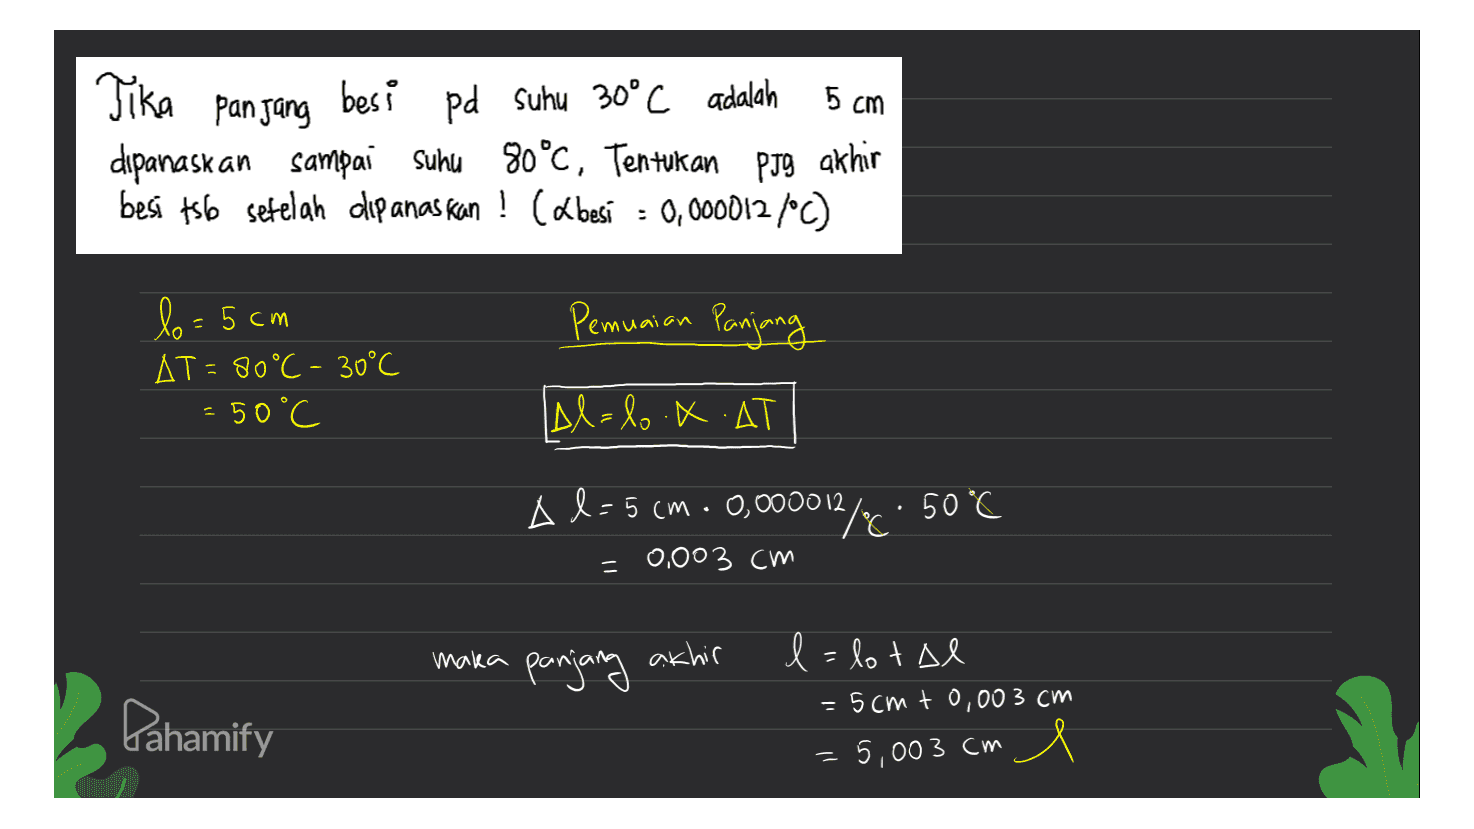 Tika panjang 5 cm besi pd Suhu 30°C adalah dipanaskan sampai suhu 80°C, Tentukan PJS akhir besi ts6 setelah dipanaskan ! (Lbesí = 0,0000127°C) ° Pemuaian Panjang lo= 5cm AT=80°C - 30°C = 50°C Al=l.X.AT Al-5cm. 0,000012/6: 50°C % = 0,003 cm maka panjang akhir l=lotal = 5cmt0,003 cm Pahamify = 5,003 cm 1 